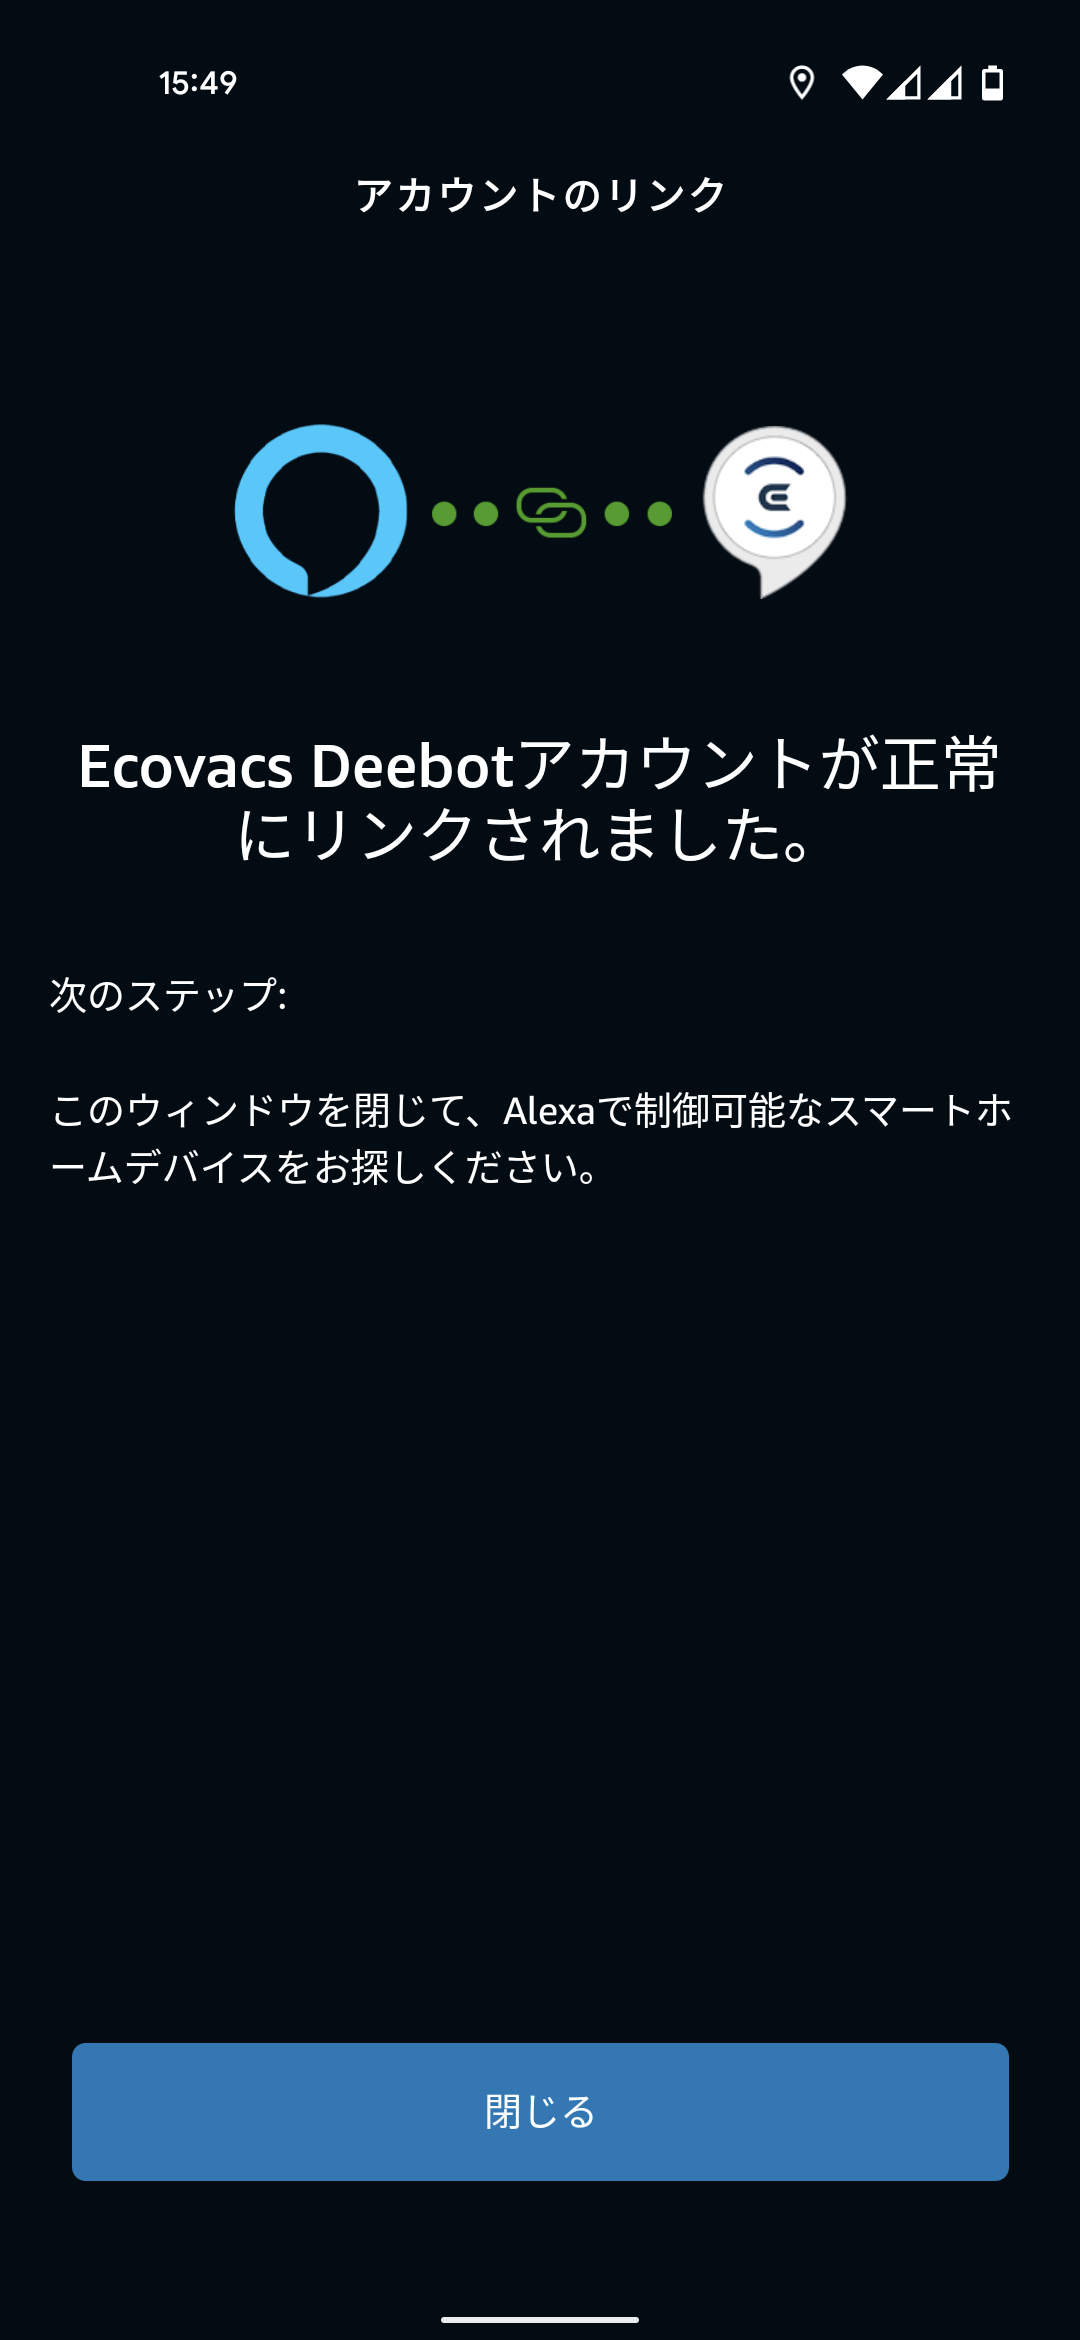 ECOVACS DEEBOT N8+ Amazon.co.jp限定モデル ロボット掃除機 アレクサスキル 連携